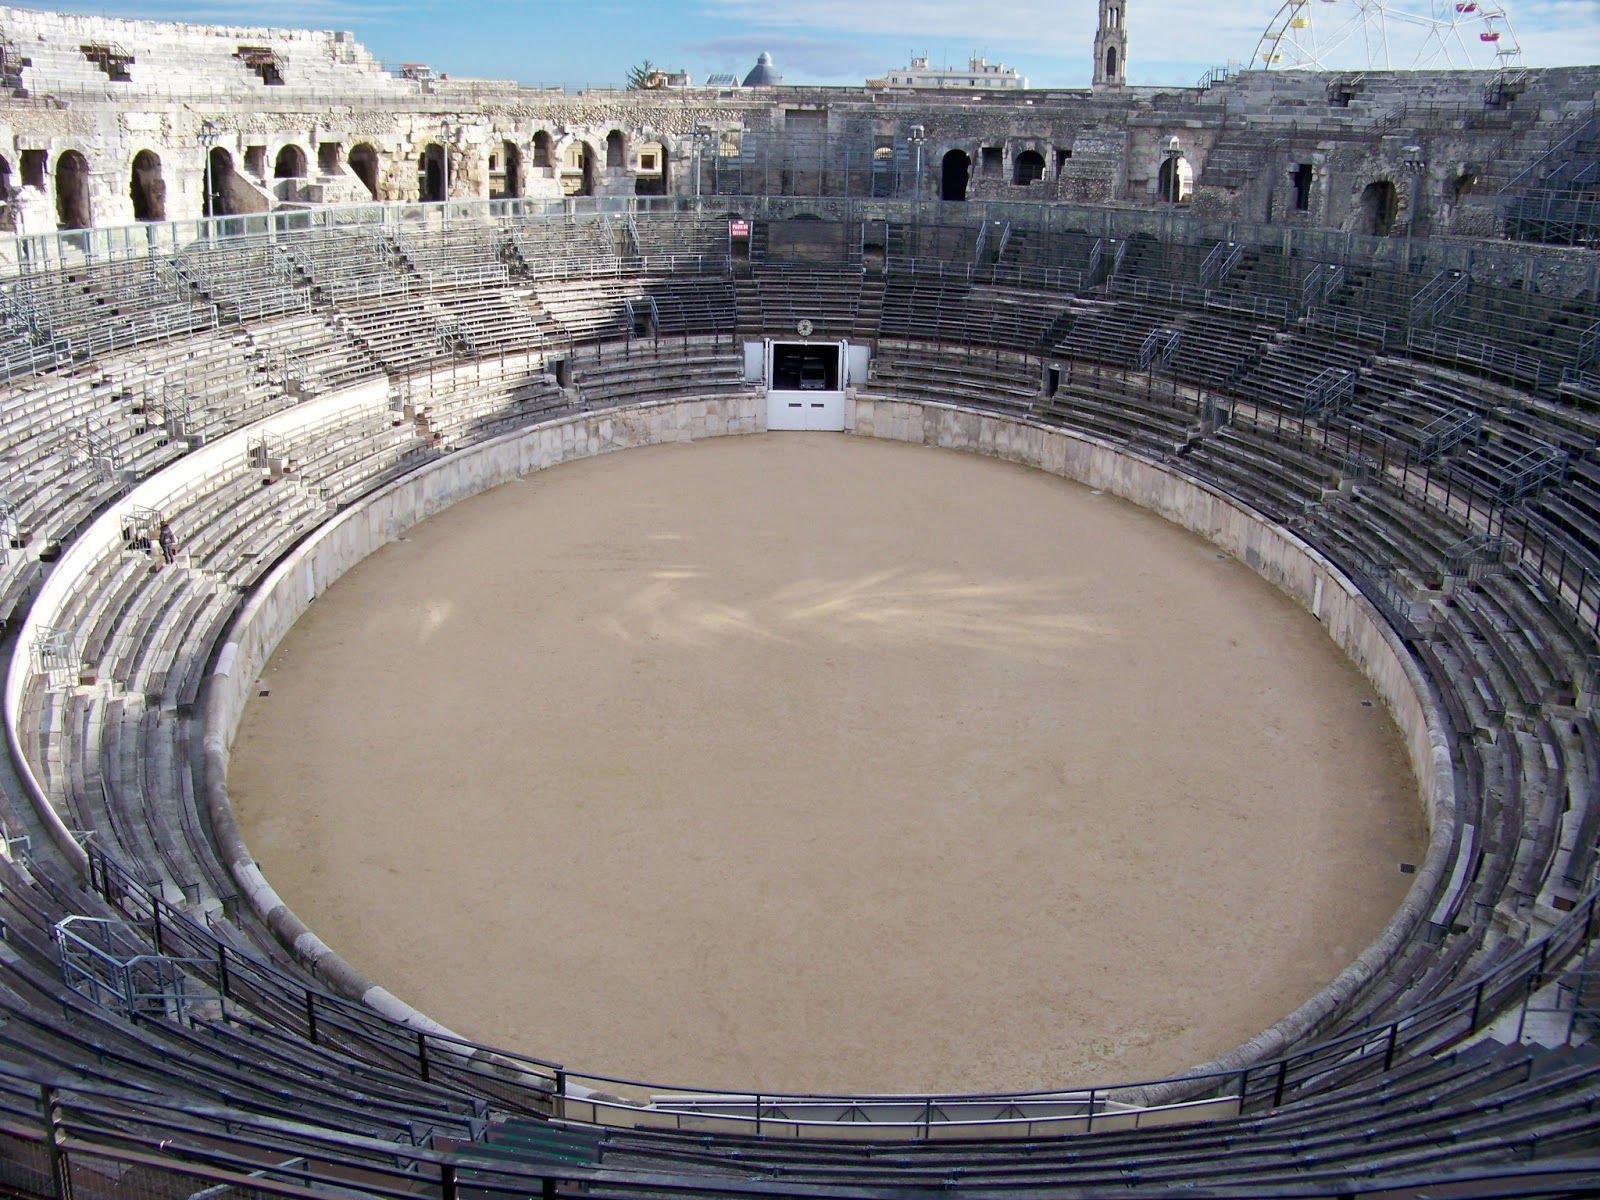 Arena. Рим Колизей Арена. Стадион в Риме Колизей. Гладиаторская Арена в Риме. Арена амфитеатра Колизей.